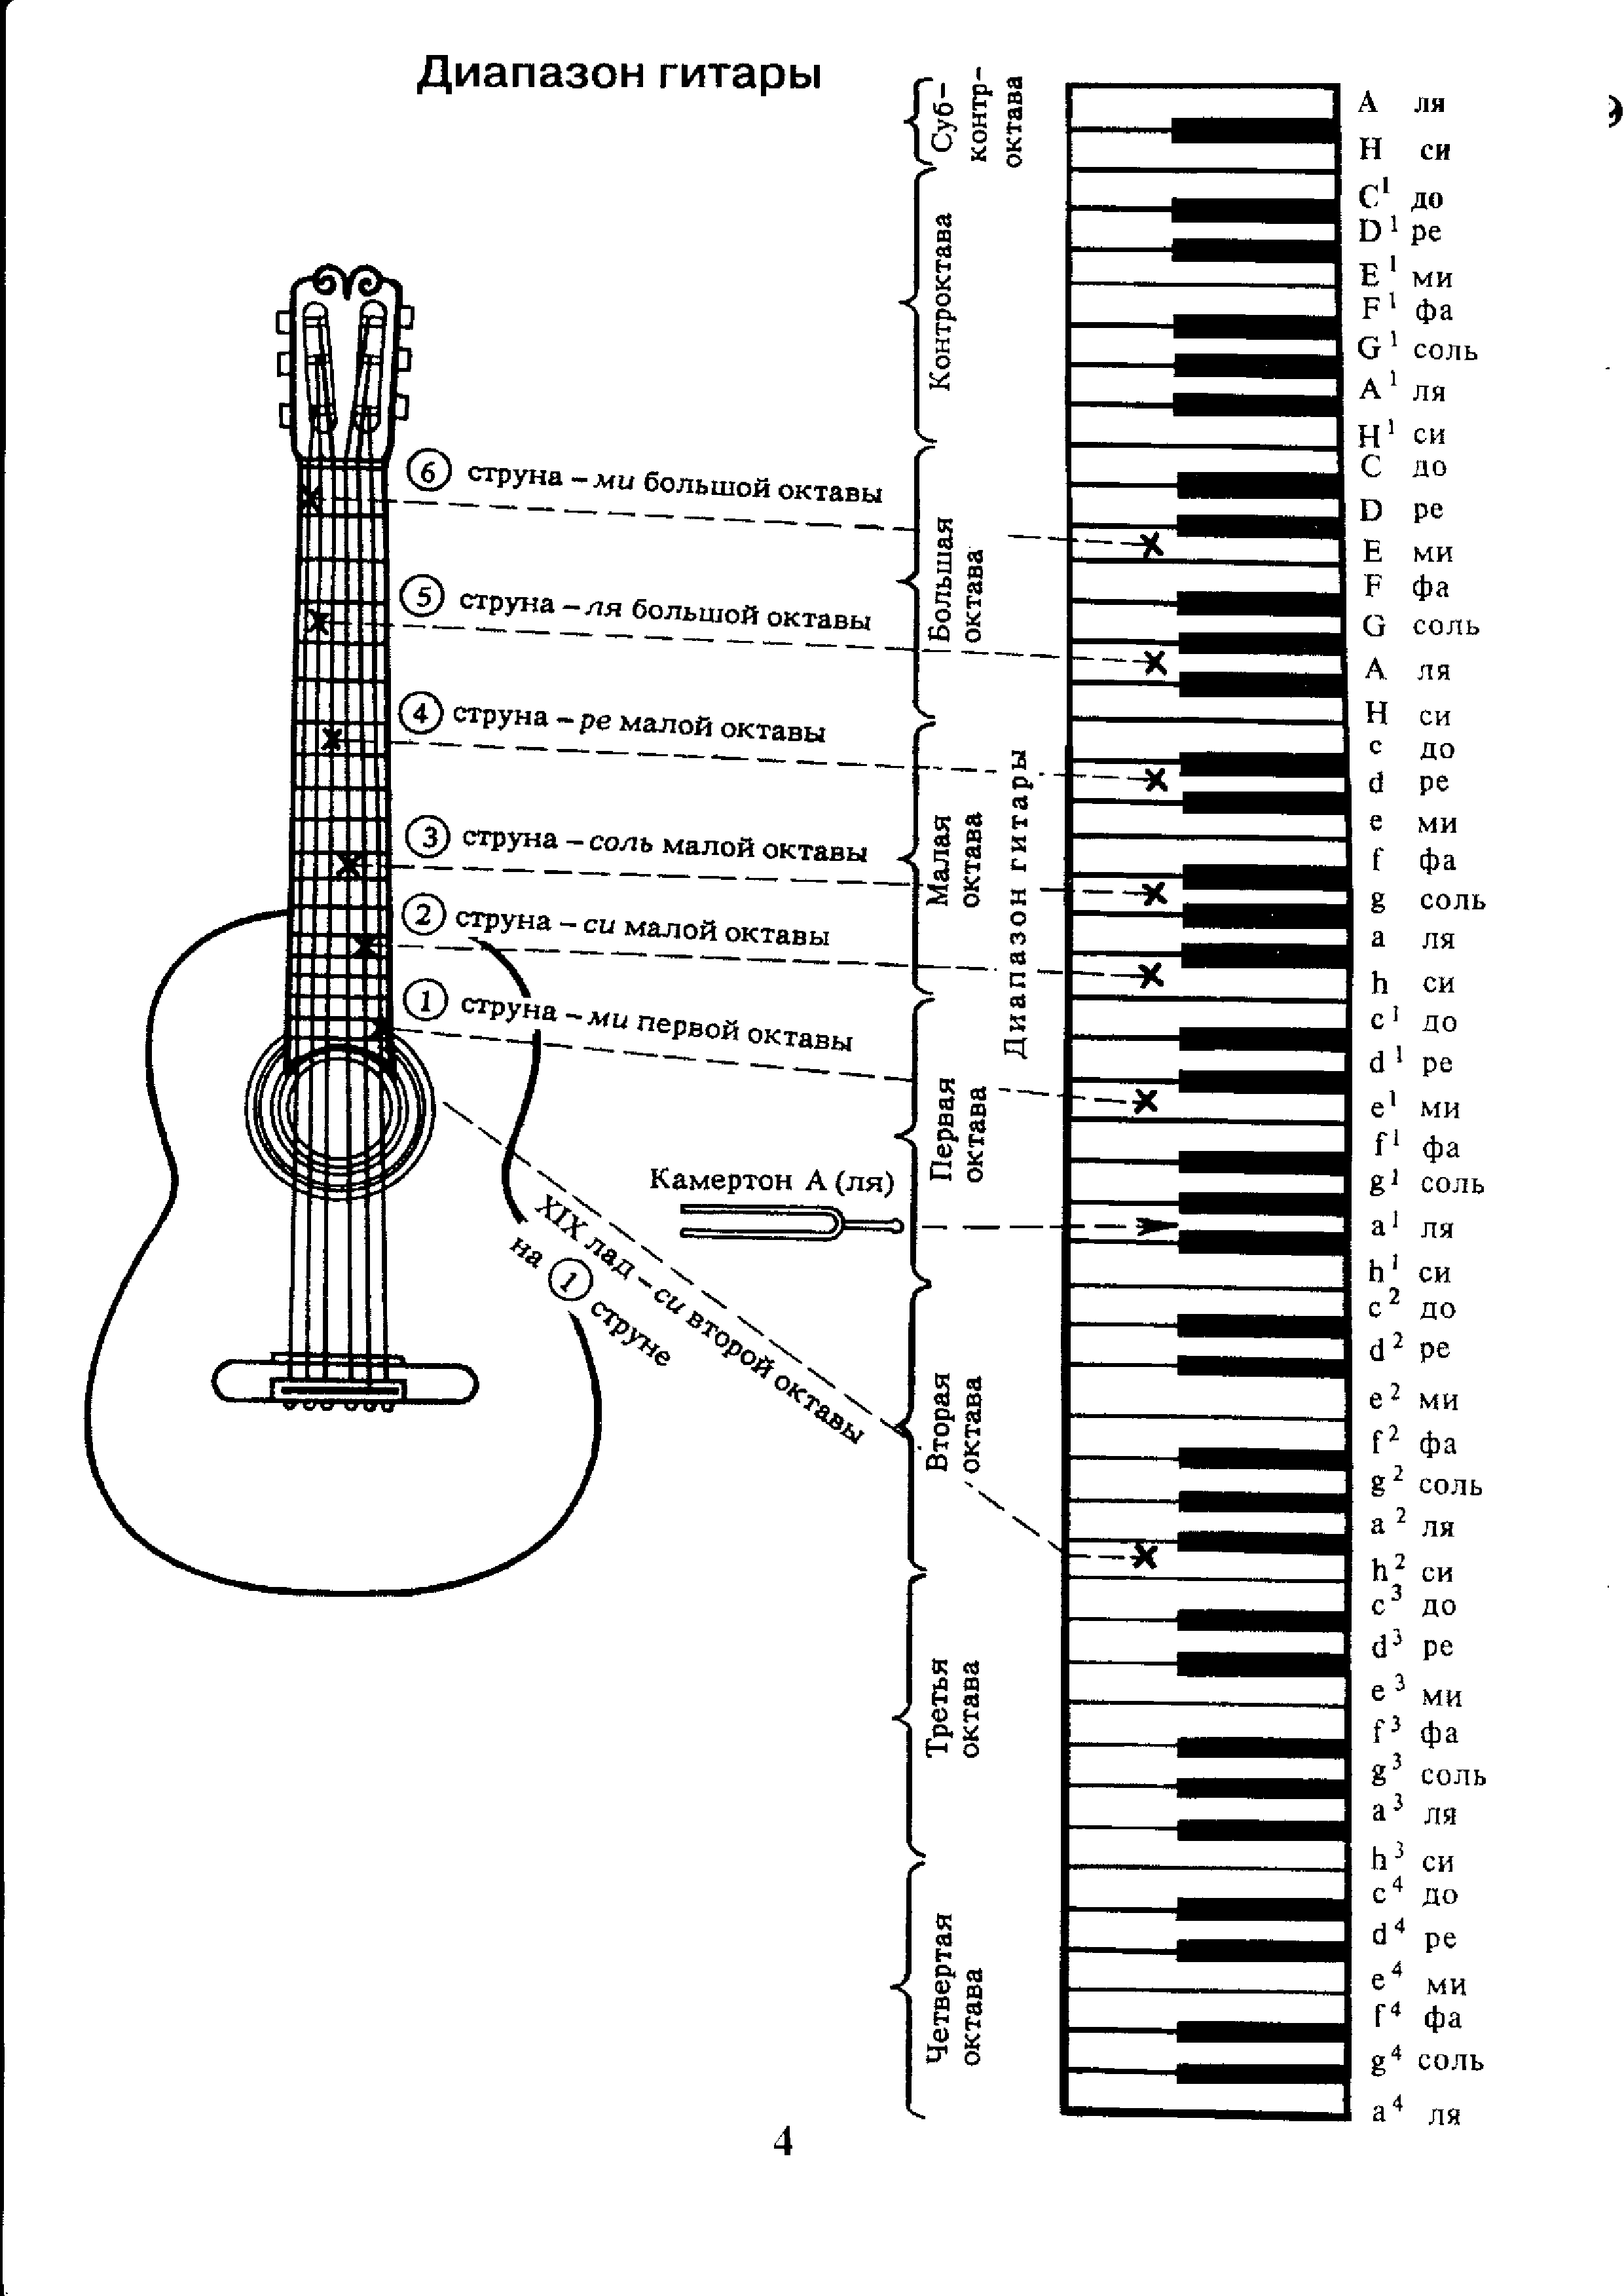 Гитара 7 ноты. Аппликатура аккордов для гитары 6 струн для начинающих. Ноты на гитарном грифе 6 струнной. Лады на 6 струнной гитаре для начинающих. Схема гитары классической 6 струнной.